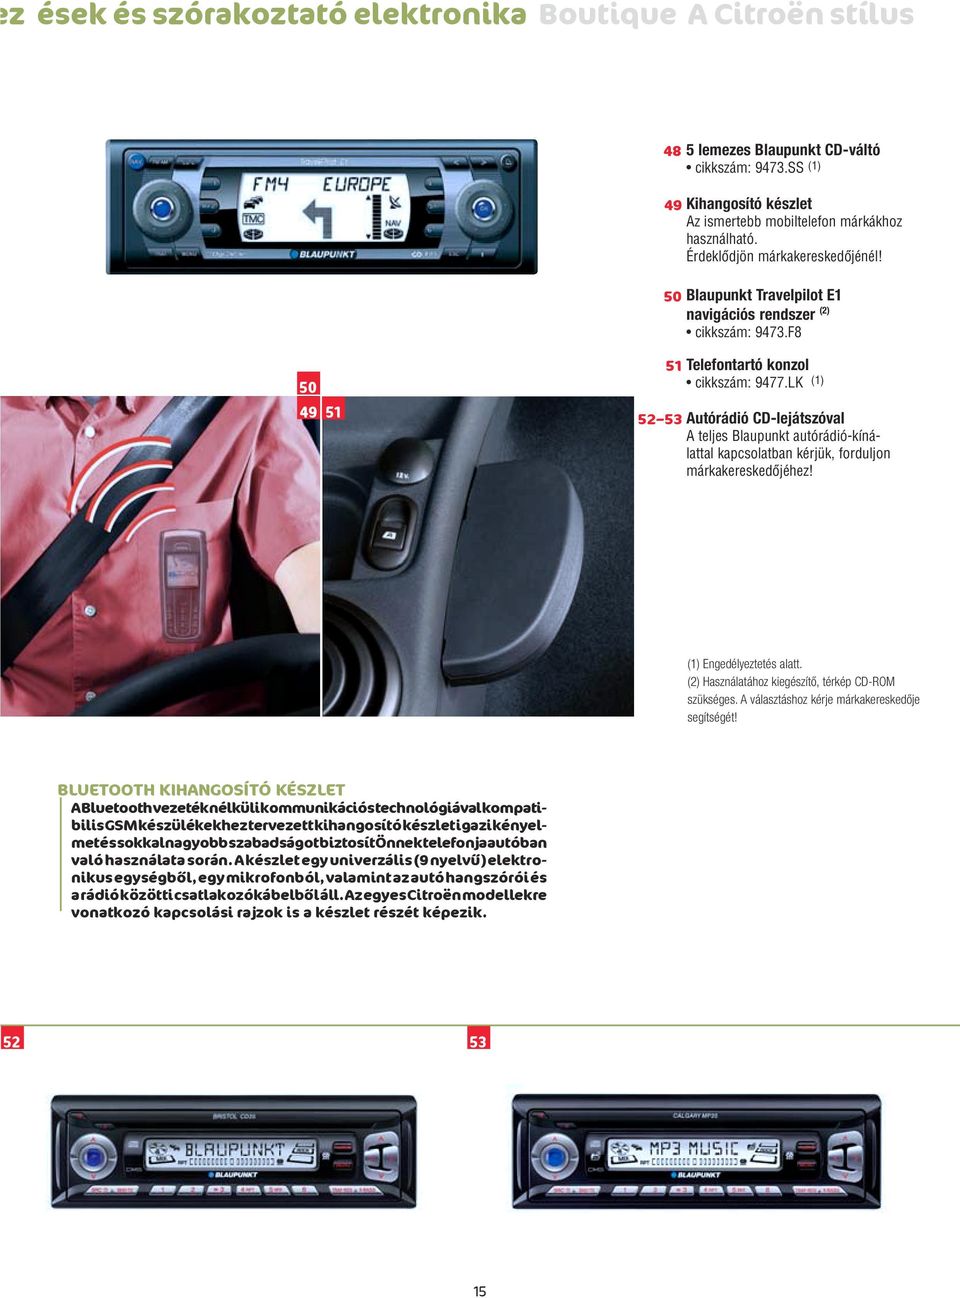 LK (1) 52 53 Autórádió CD-lejátszóval A teljes Blaupunkt autórádió-kínálattal kapcsolatban kérjük, forduljon márkakereskedôjéhez! (1) Engedélyeztetés alatt.